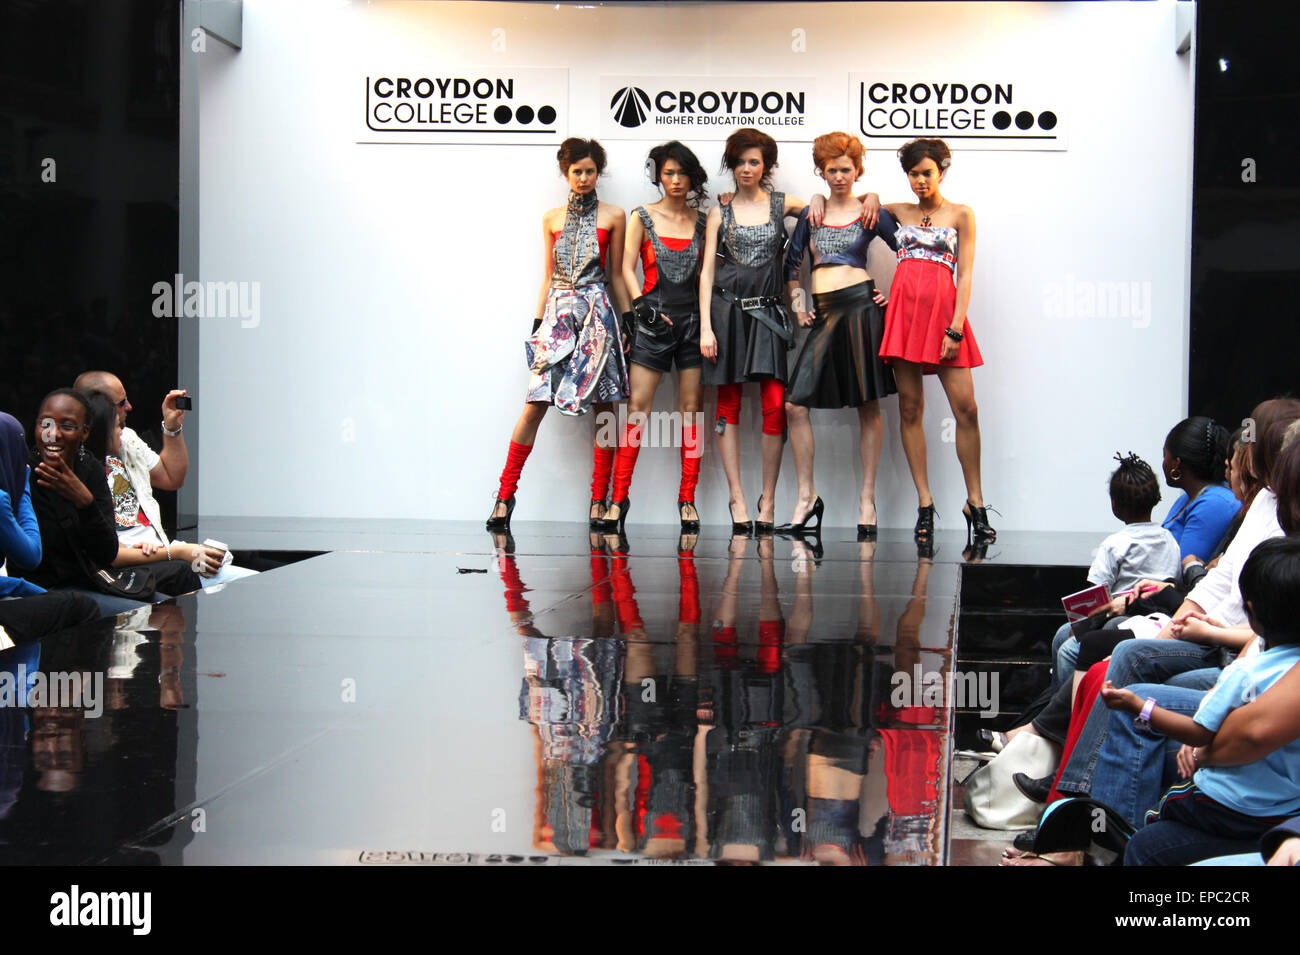 CROYDON, LONDON - 18 giugno : i modelli in Festival di moda su Giugno 18, 2008 a Whitgift Shopping Centre, Croydon, Inghilterra Foto Stock